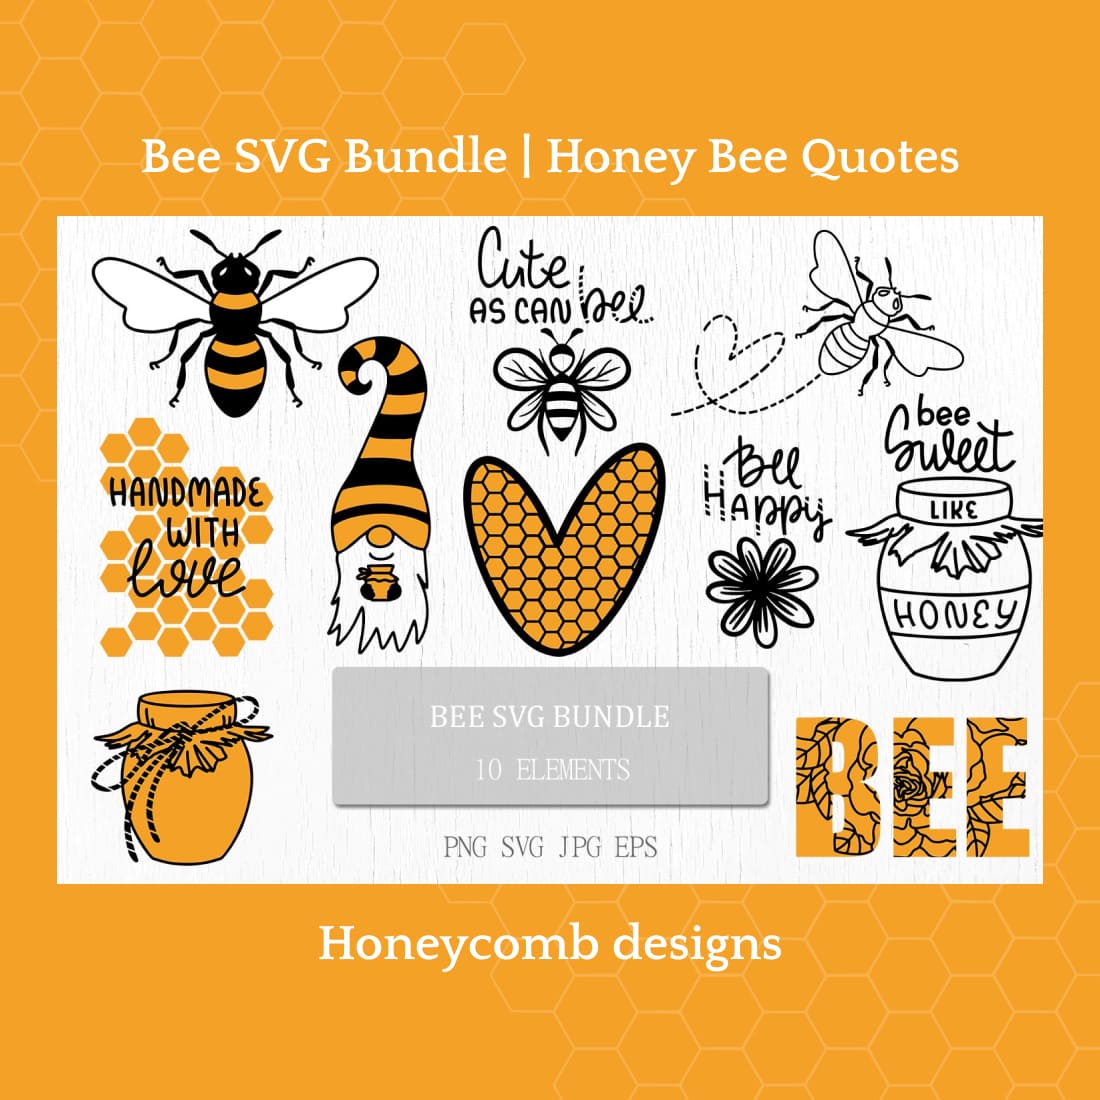 Bee svg bundle honey bee quotes.